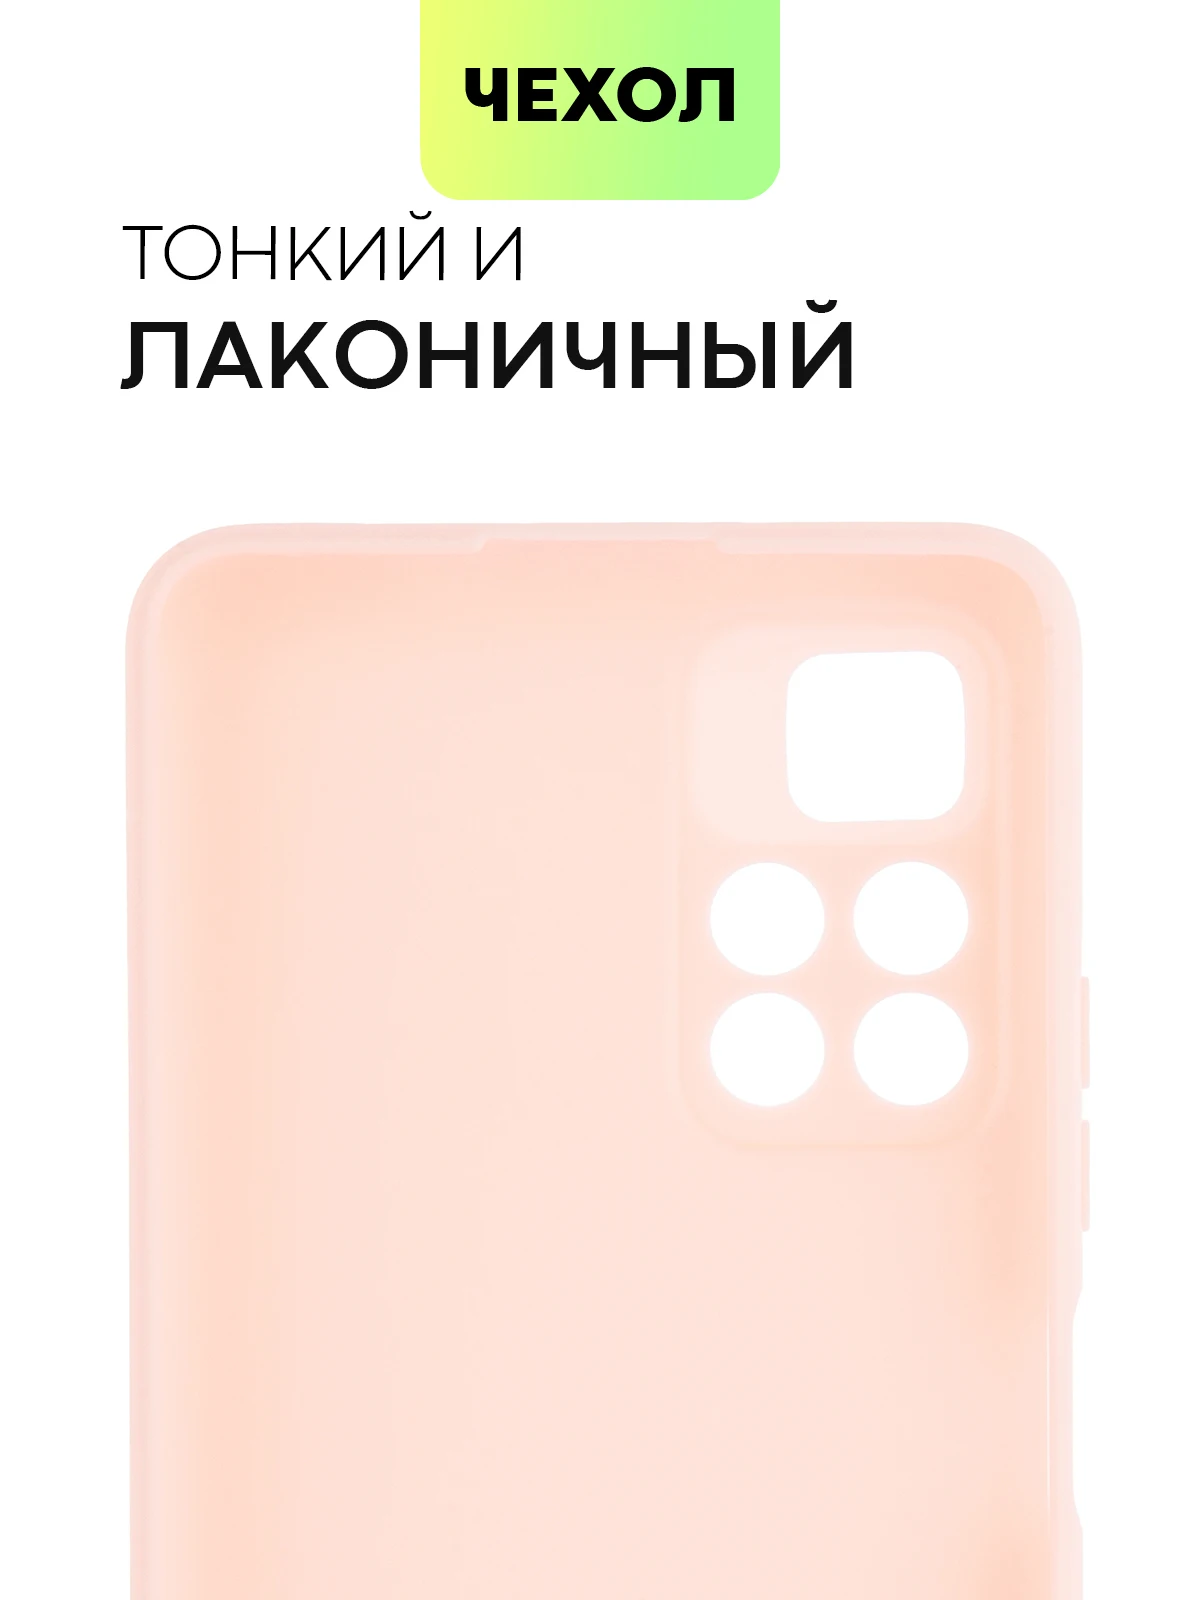 Чехол BROSCORP для Xiaomi POCO M4 Pro 5G Redmi Note 11 тонкий выполнен из качественного силикона